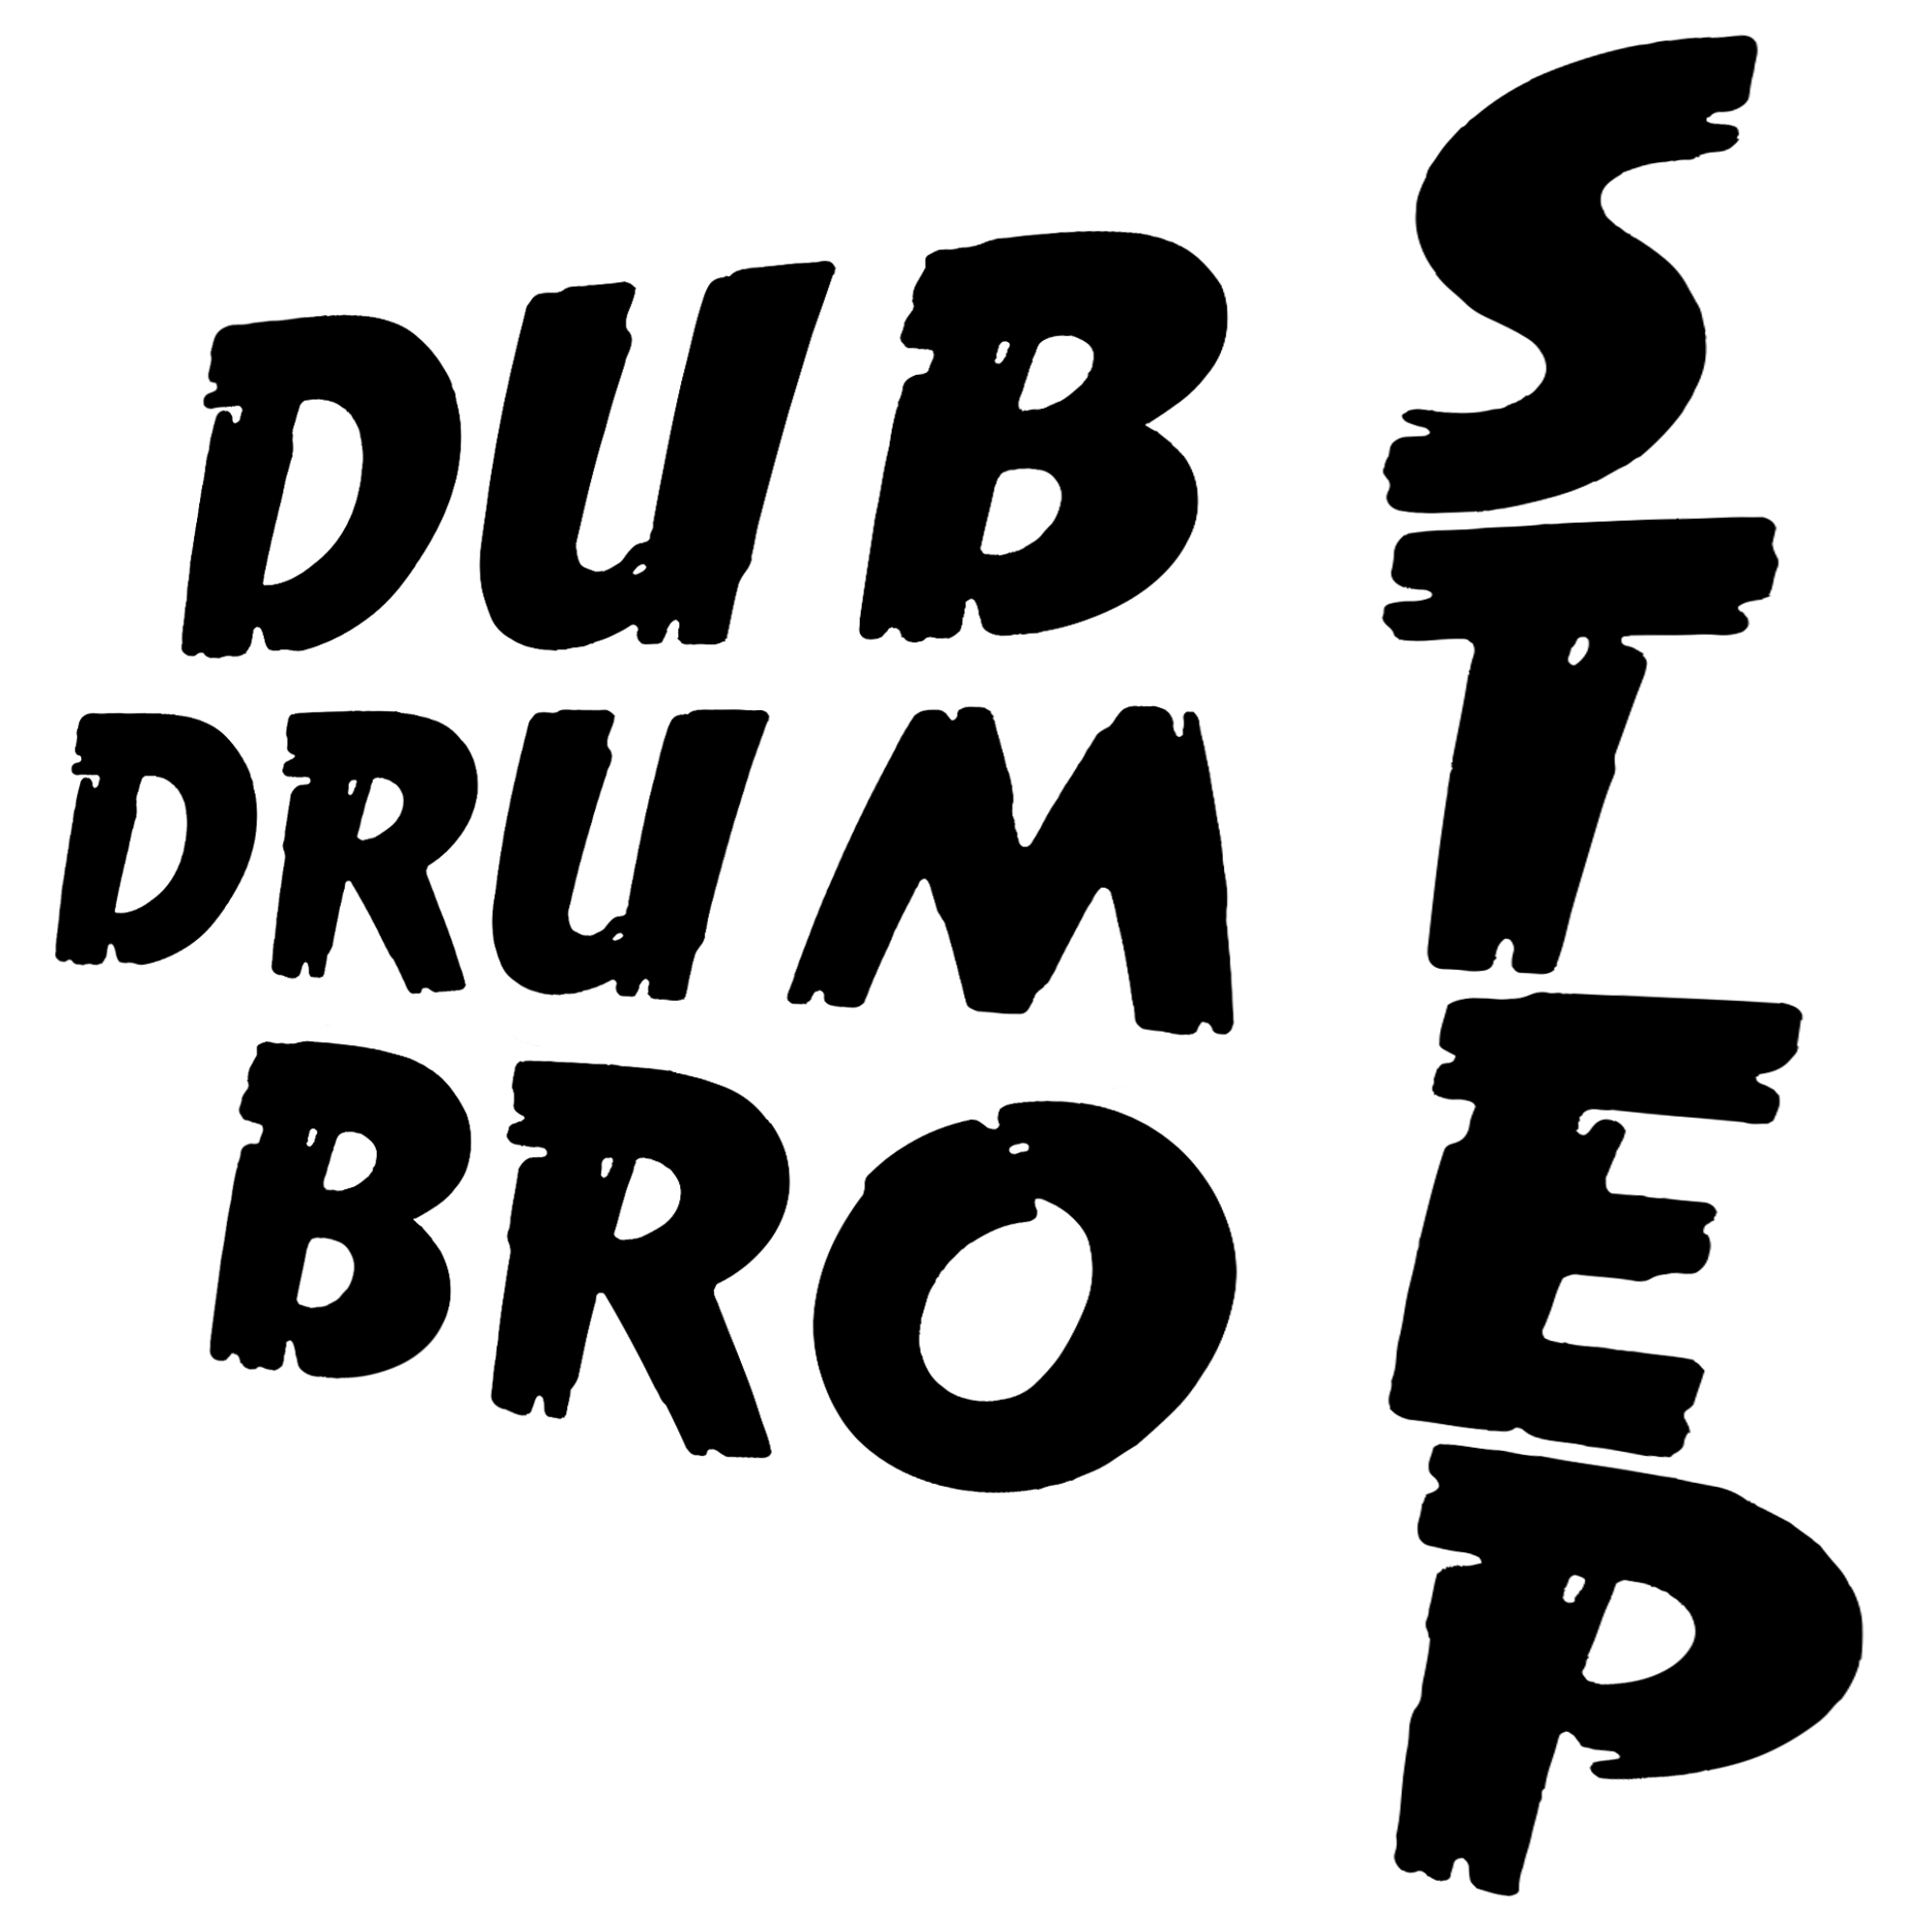 Dubstep | Drumstep | Brostep